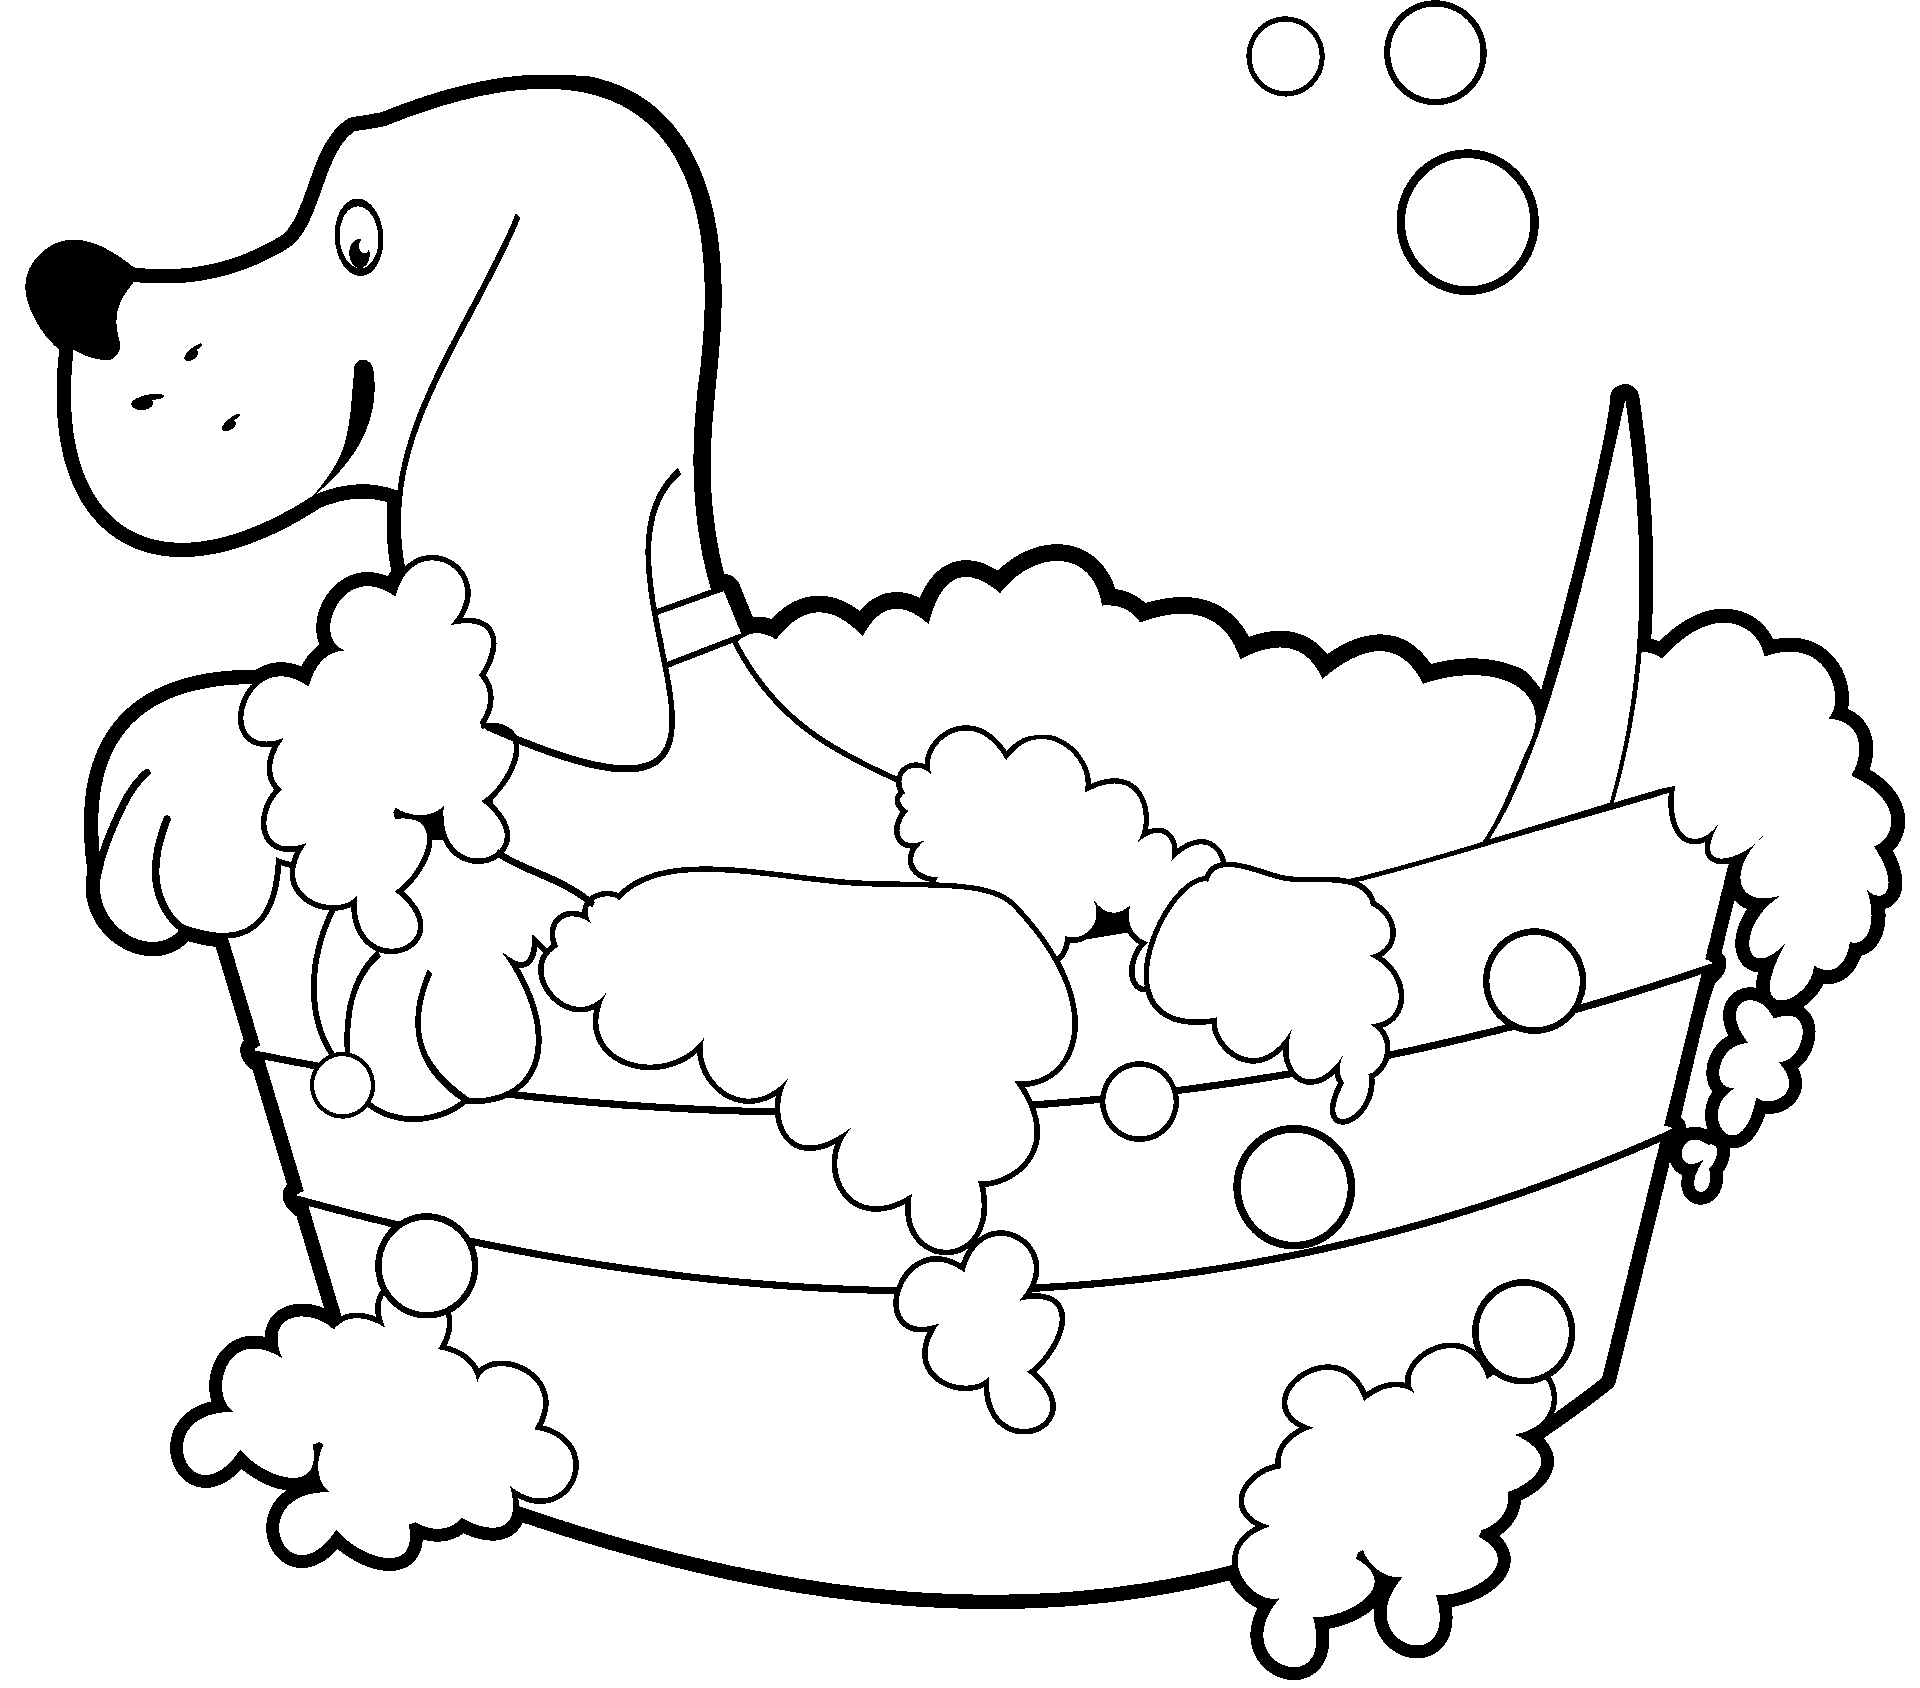 Página para colorear de perro tomando un baño en la bañera